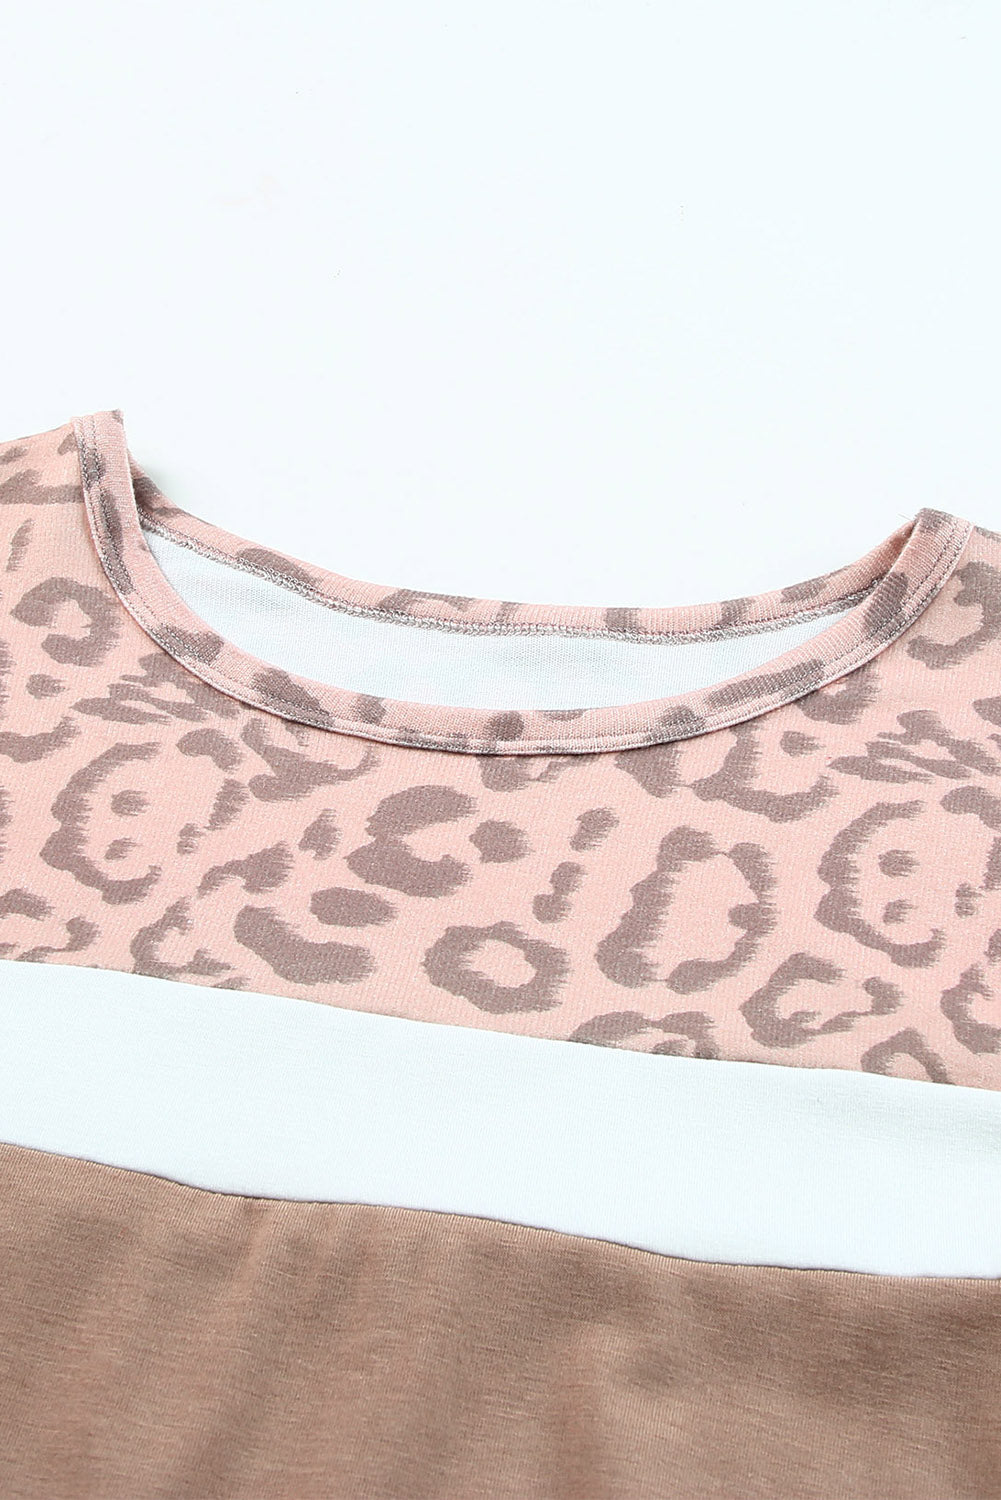 Khakifarbenes T-Shirt mit Leopardenpasse und Farbblockdesign